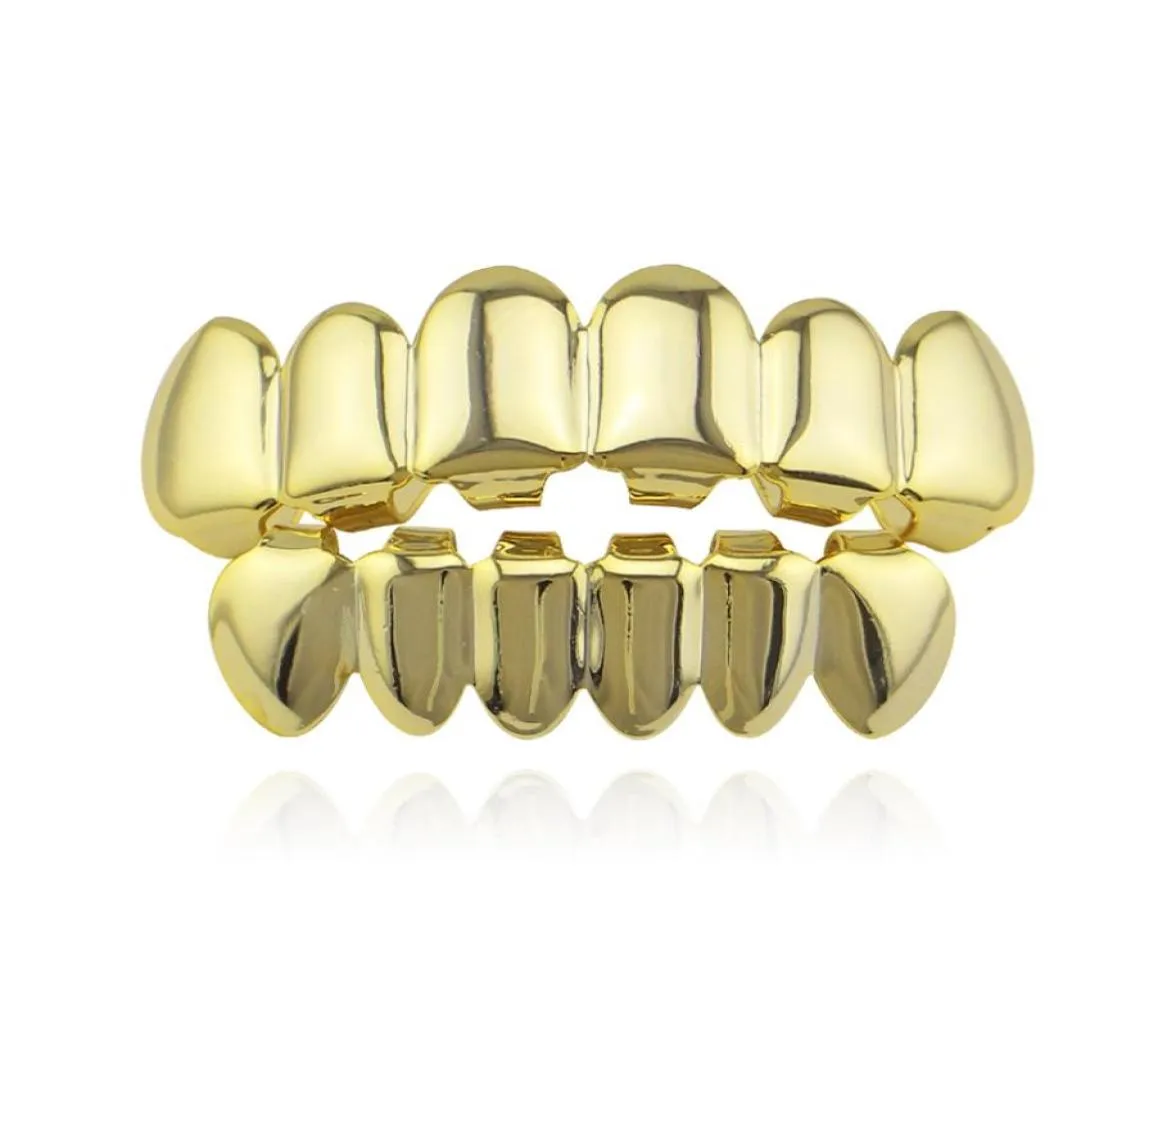 2022 6 Kły zębów moda złota platowane rodowe zęby hiphopowe grillz górne dolne rockowe grille dentystyczne zestawy Halloween rekwizytów 4151266